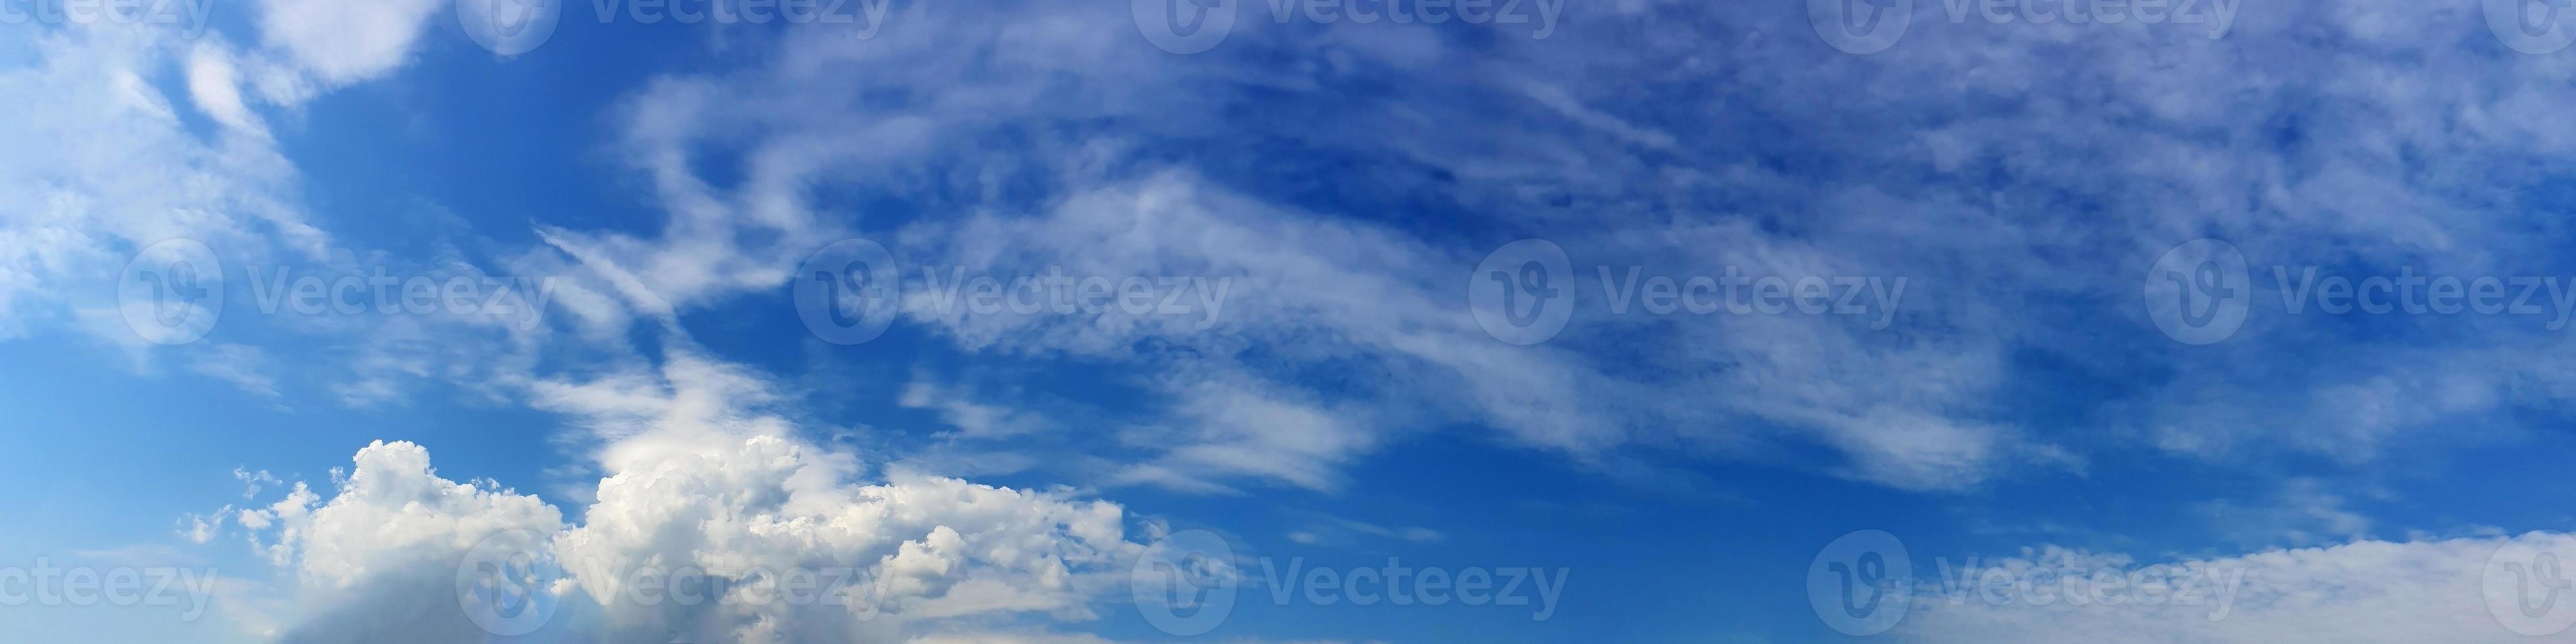 panorama del cielo con nubes en un día soleado foto